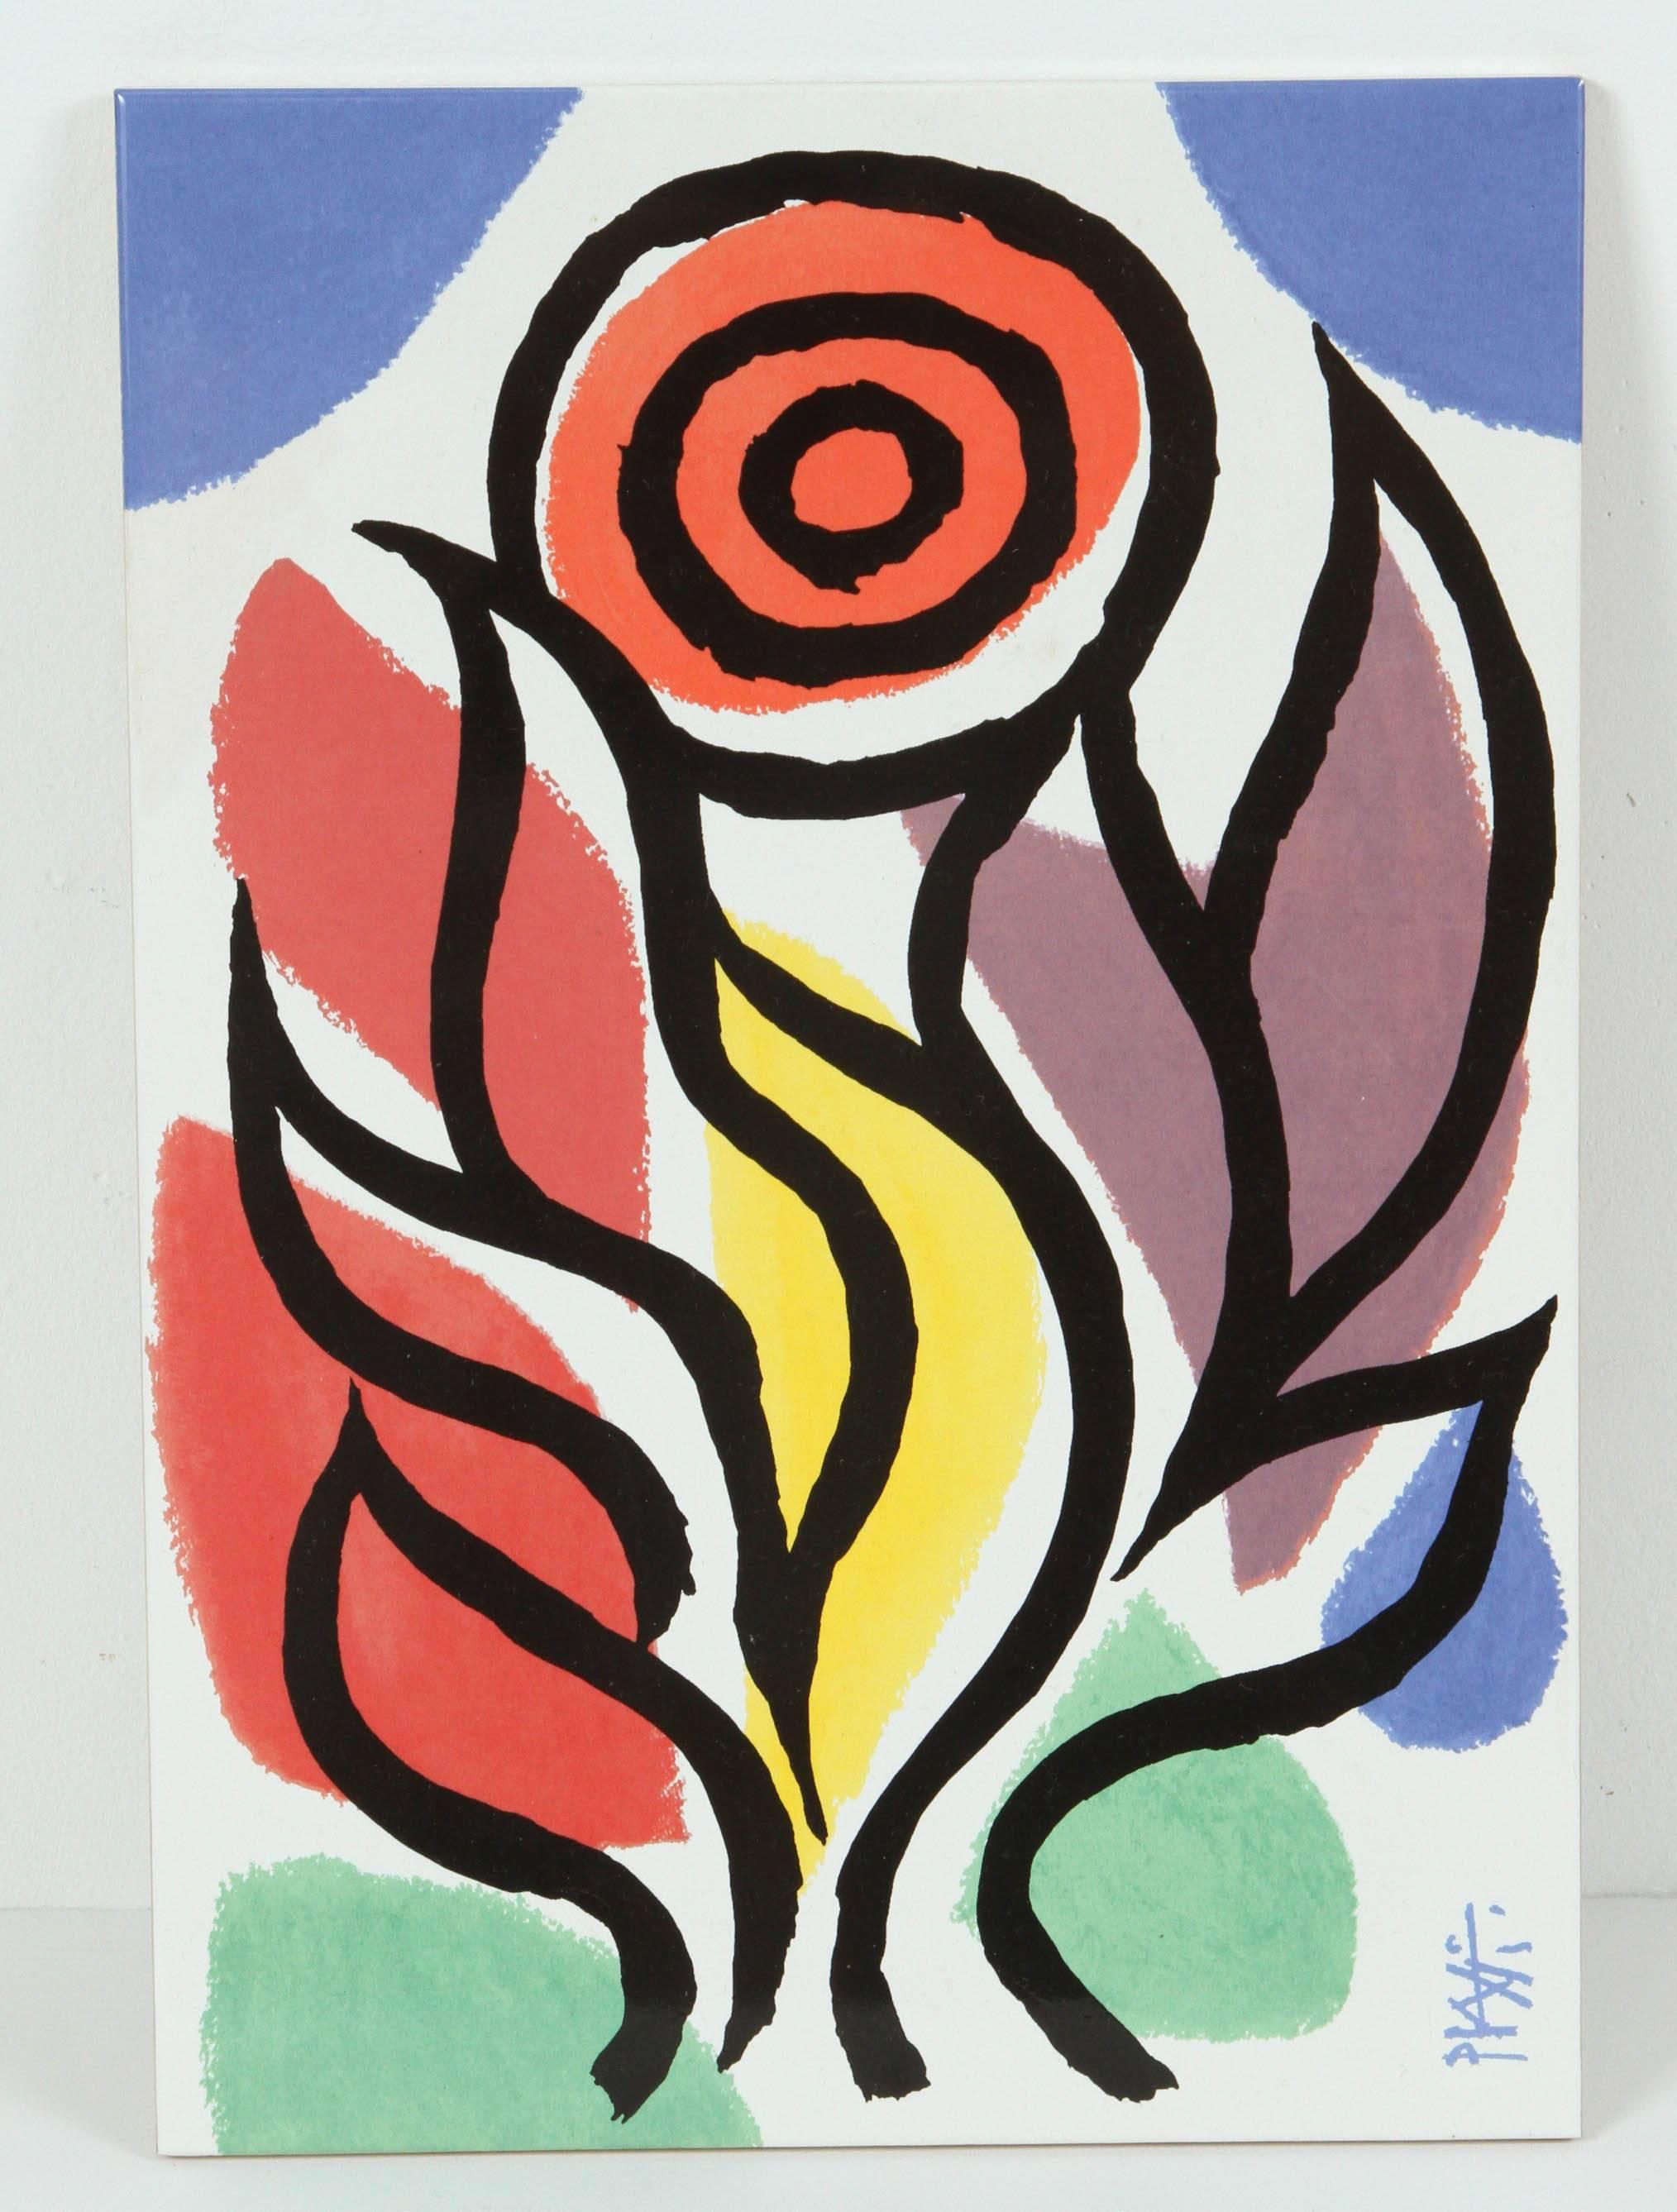 Swiss Post Modern Celestino Piatti Ceramic Art Tiles in Picasso Style For Sale